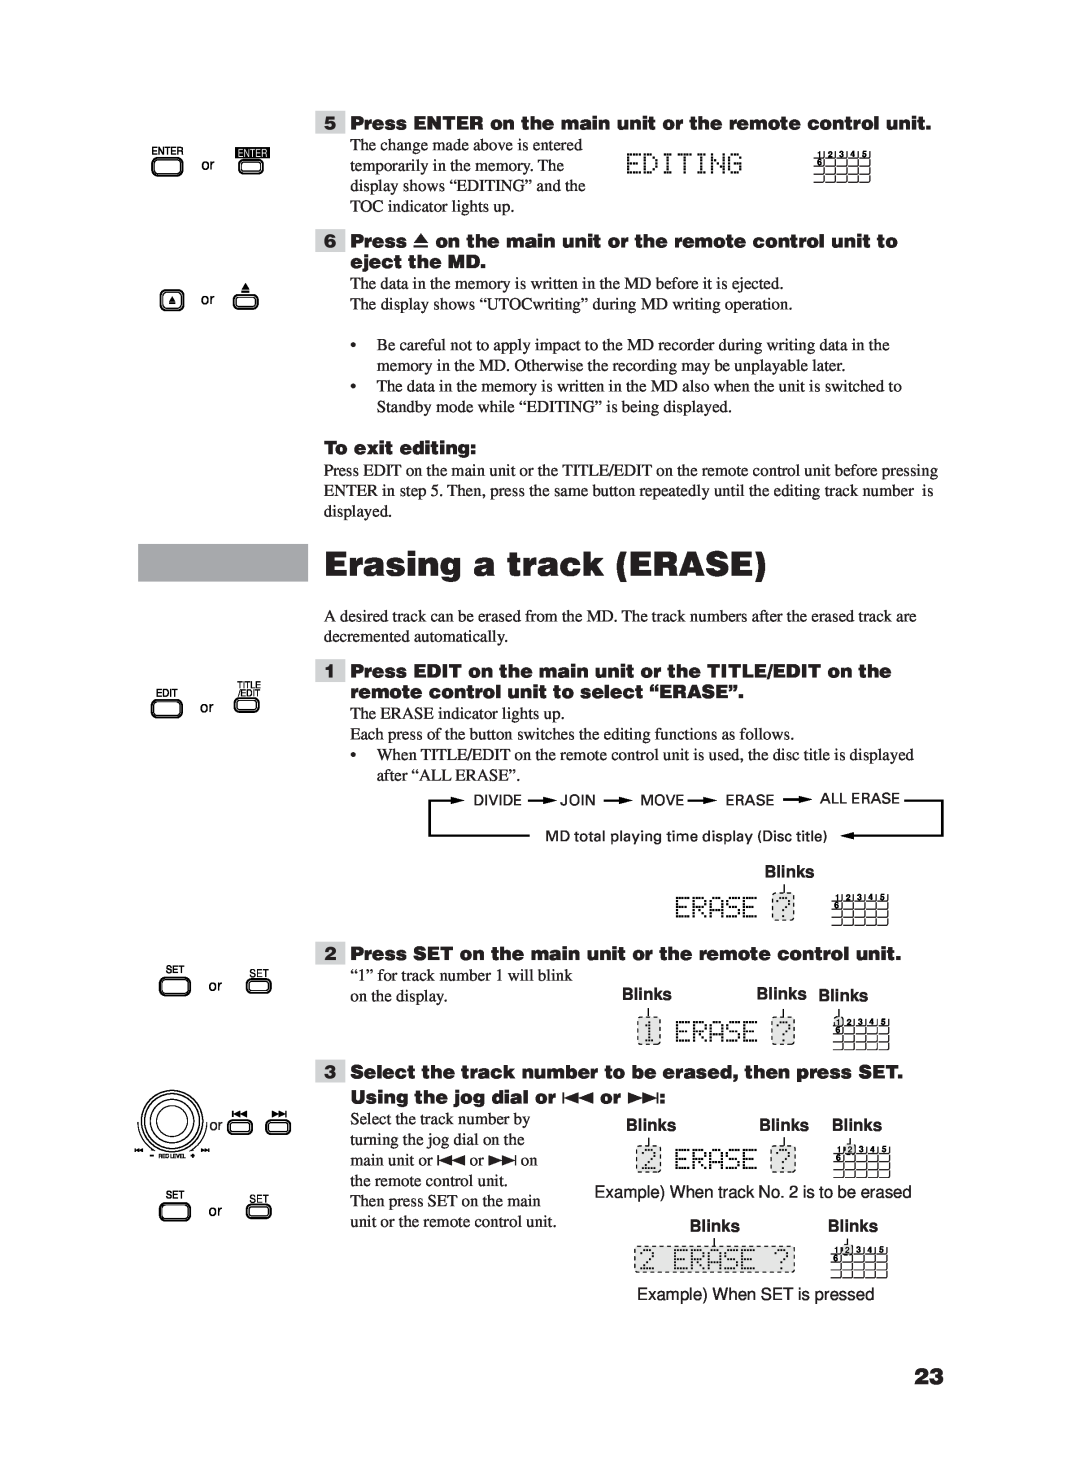 JVC XM-228BK manual Erasing a track ERASE, To exit editing 